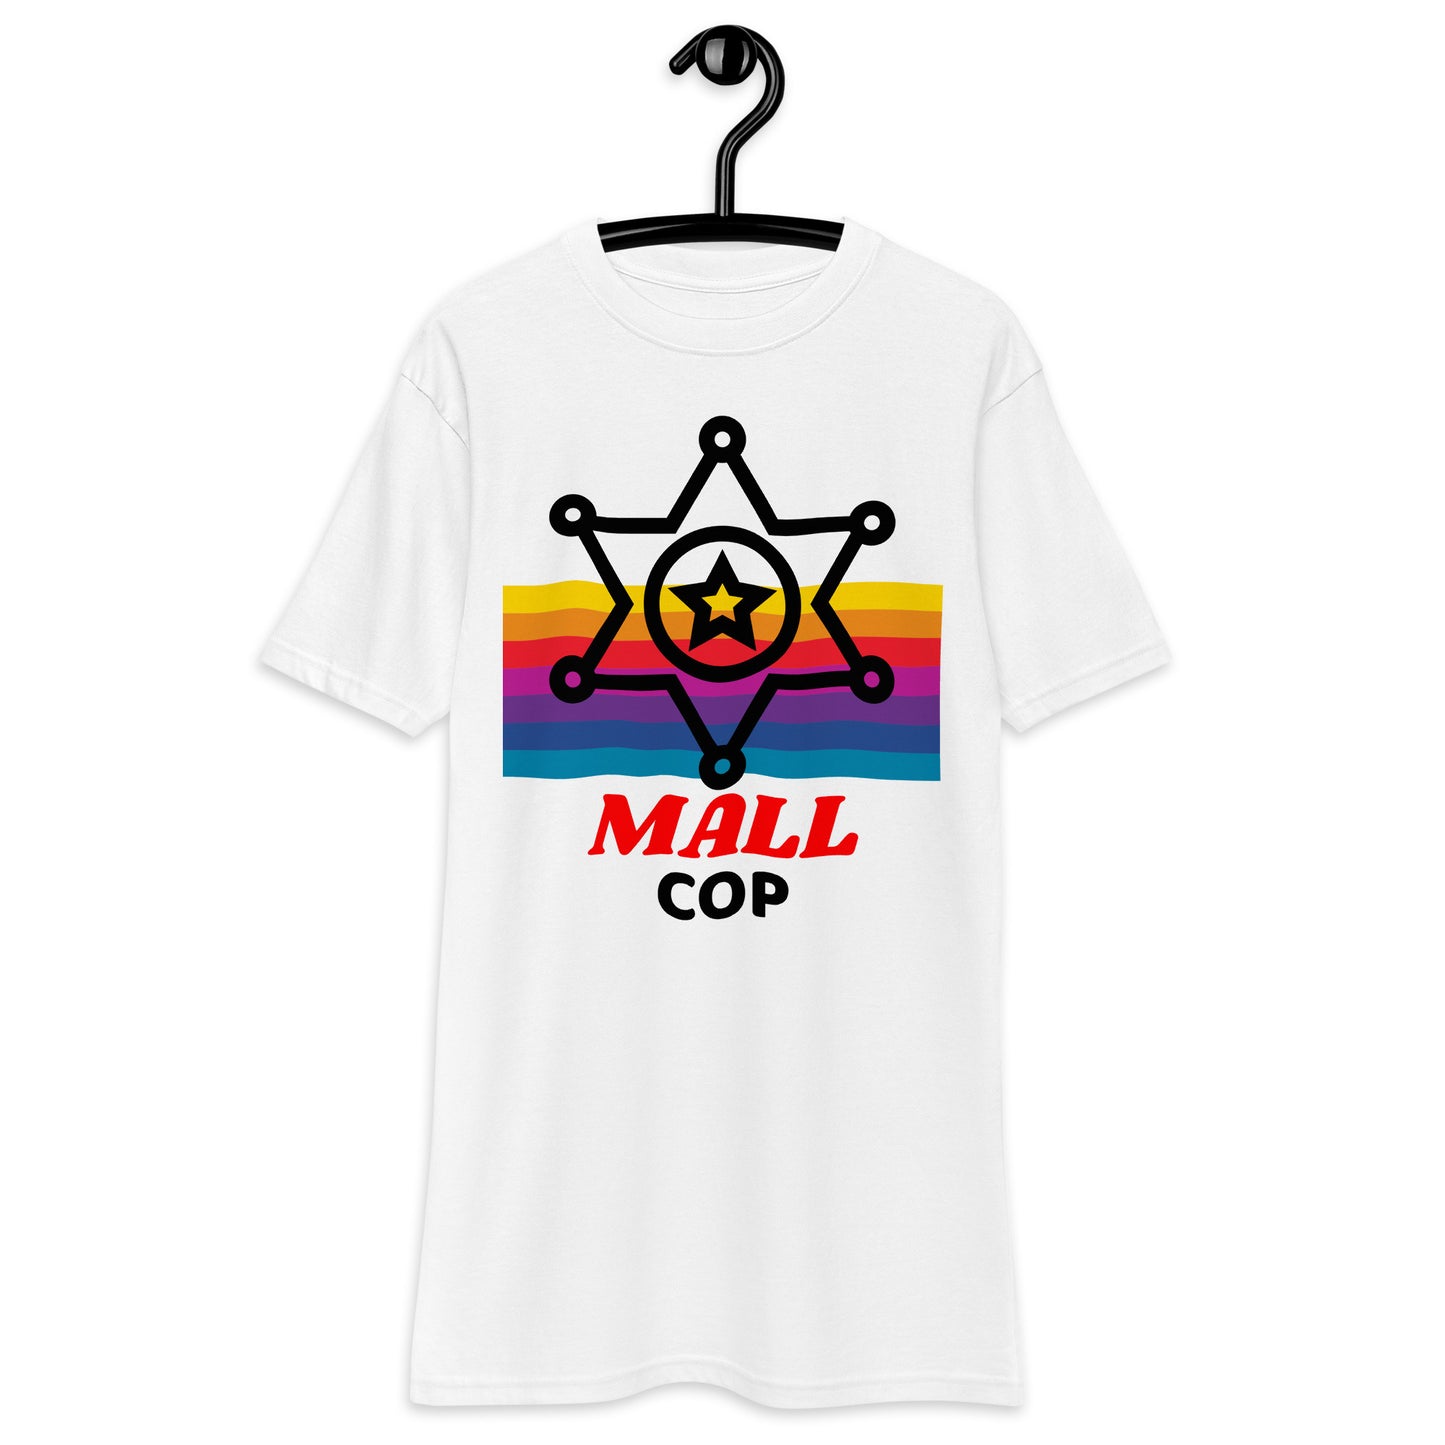 Camiseta pesada con insignia de policía del centro comercial